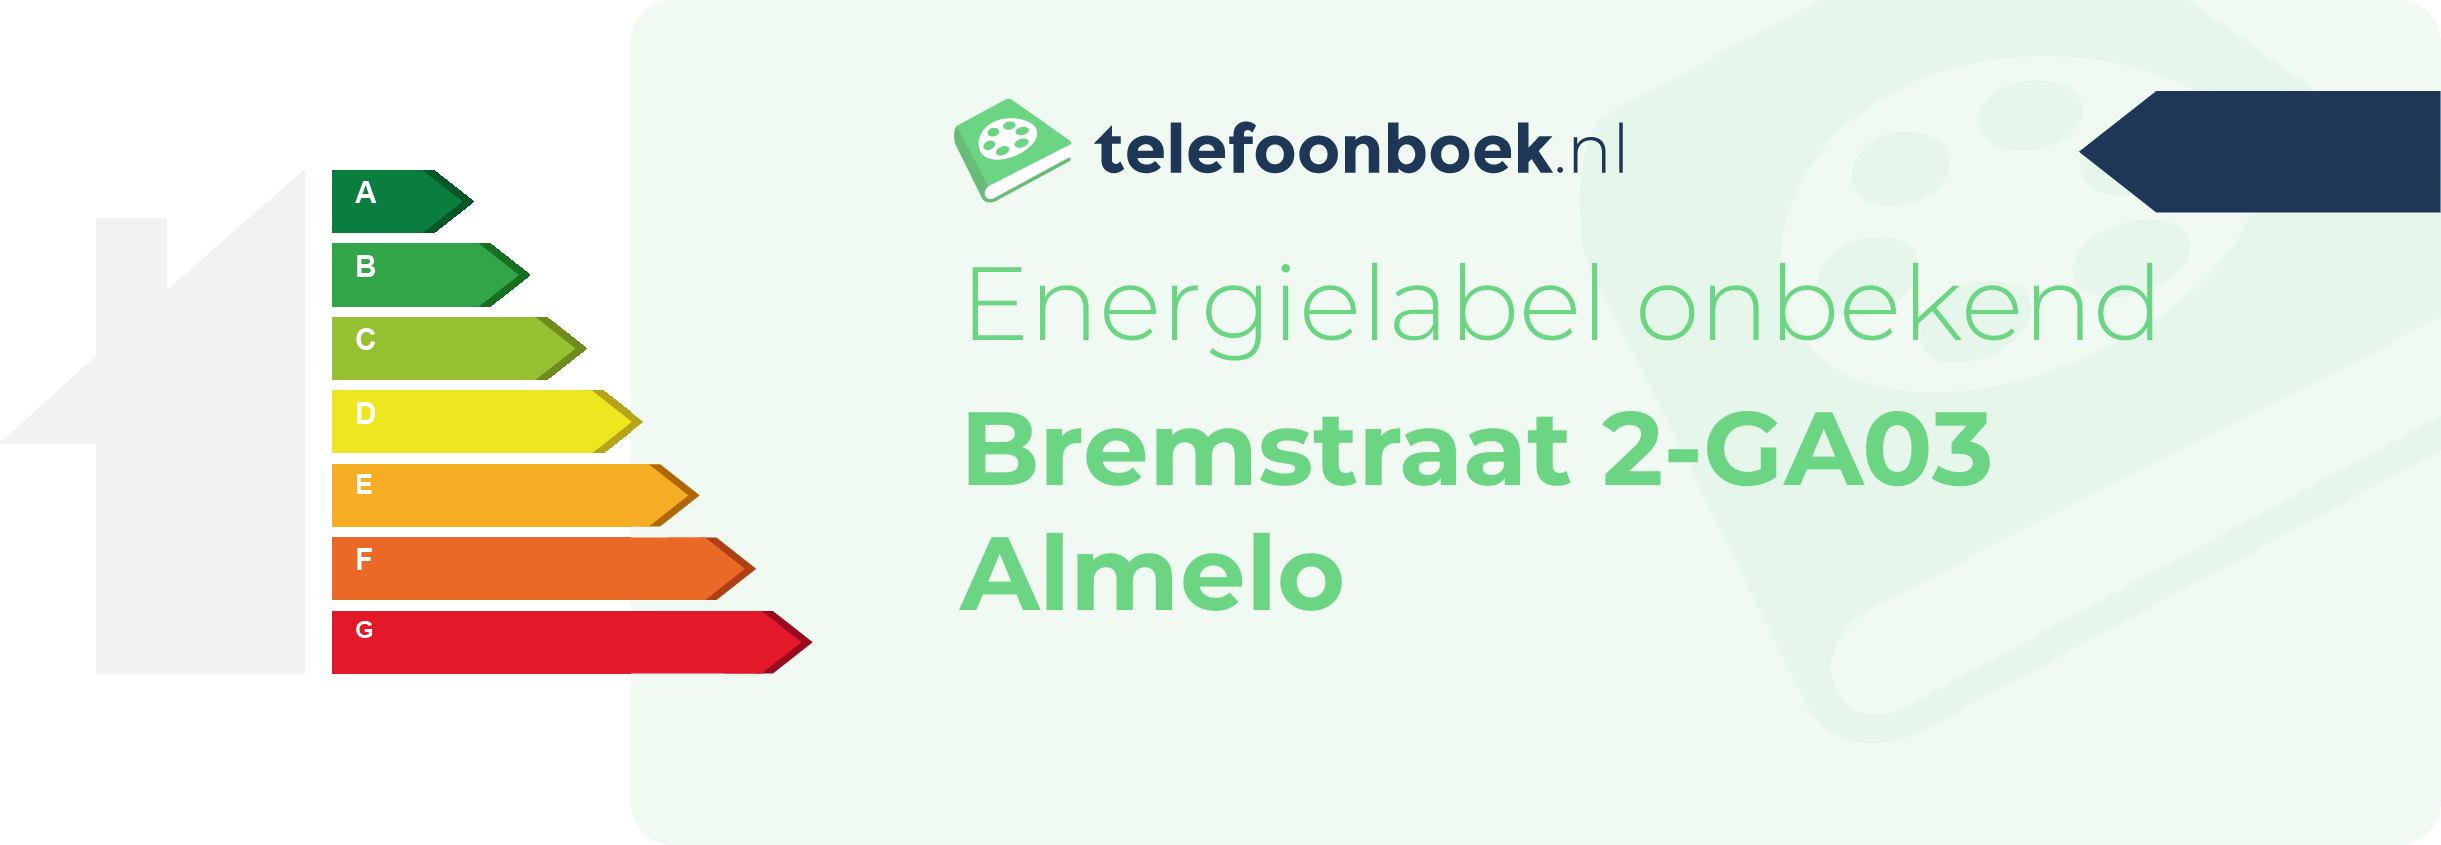 Energielabel Bremstraat 2-GA03 Almelo